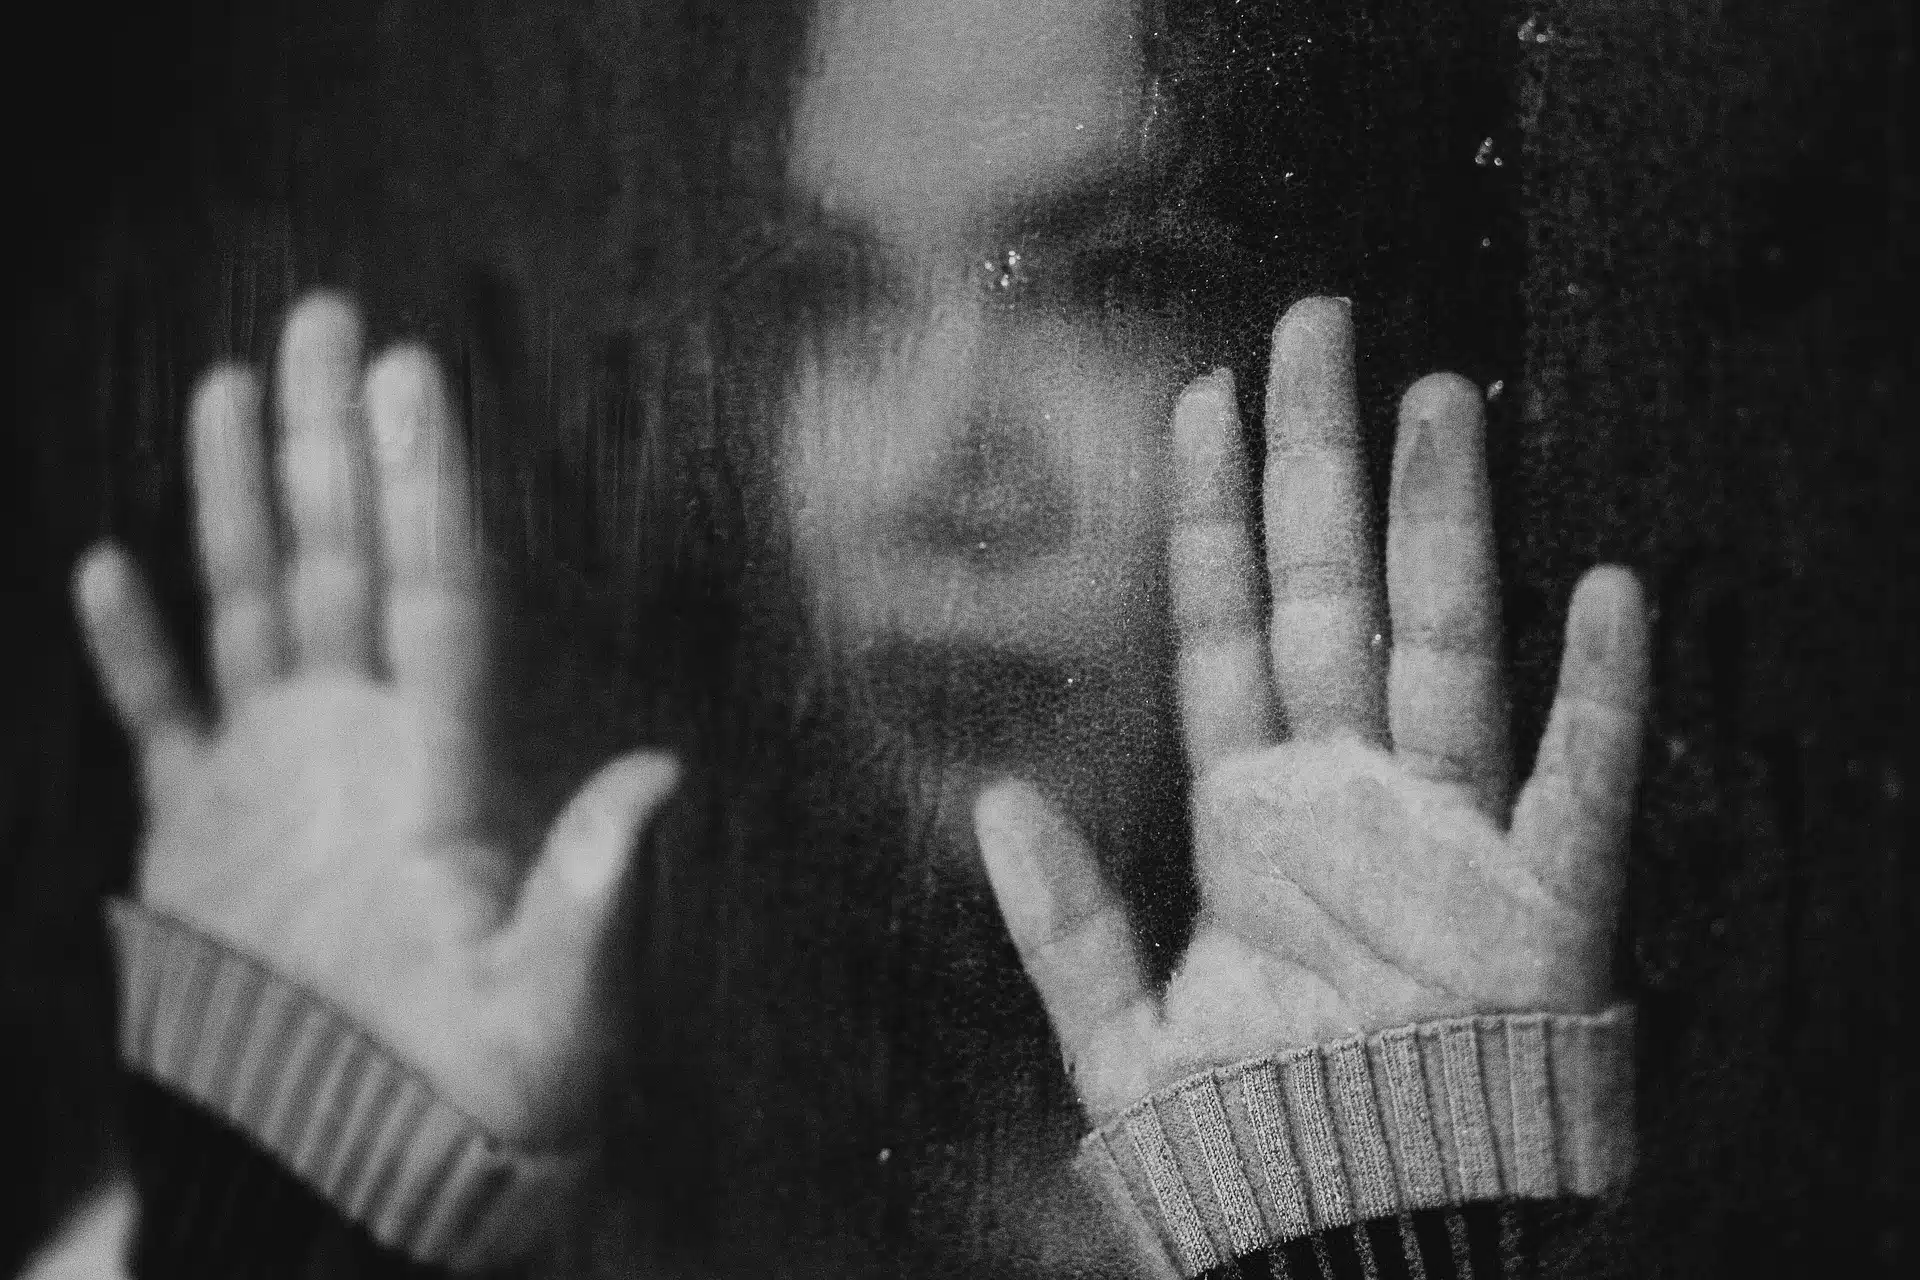 Imagen difusa de una mujer recargando sus manos sobre una ventana